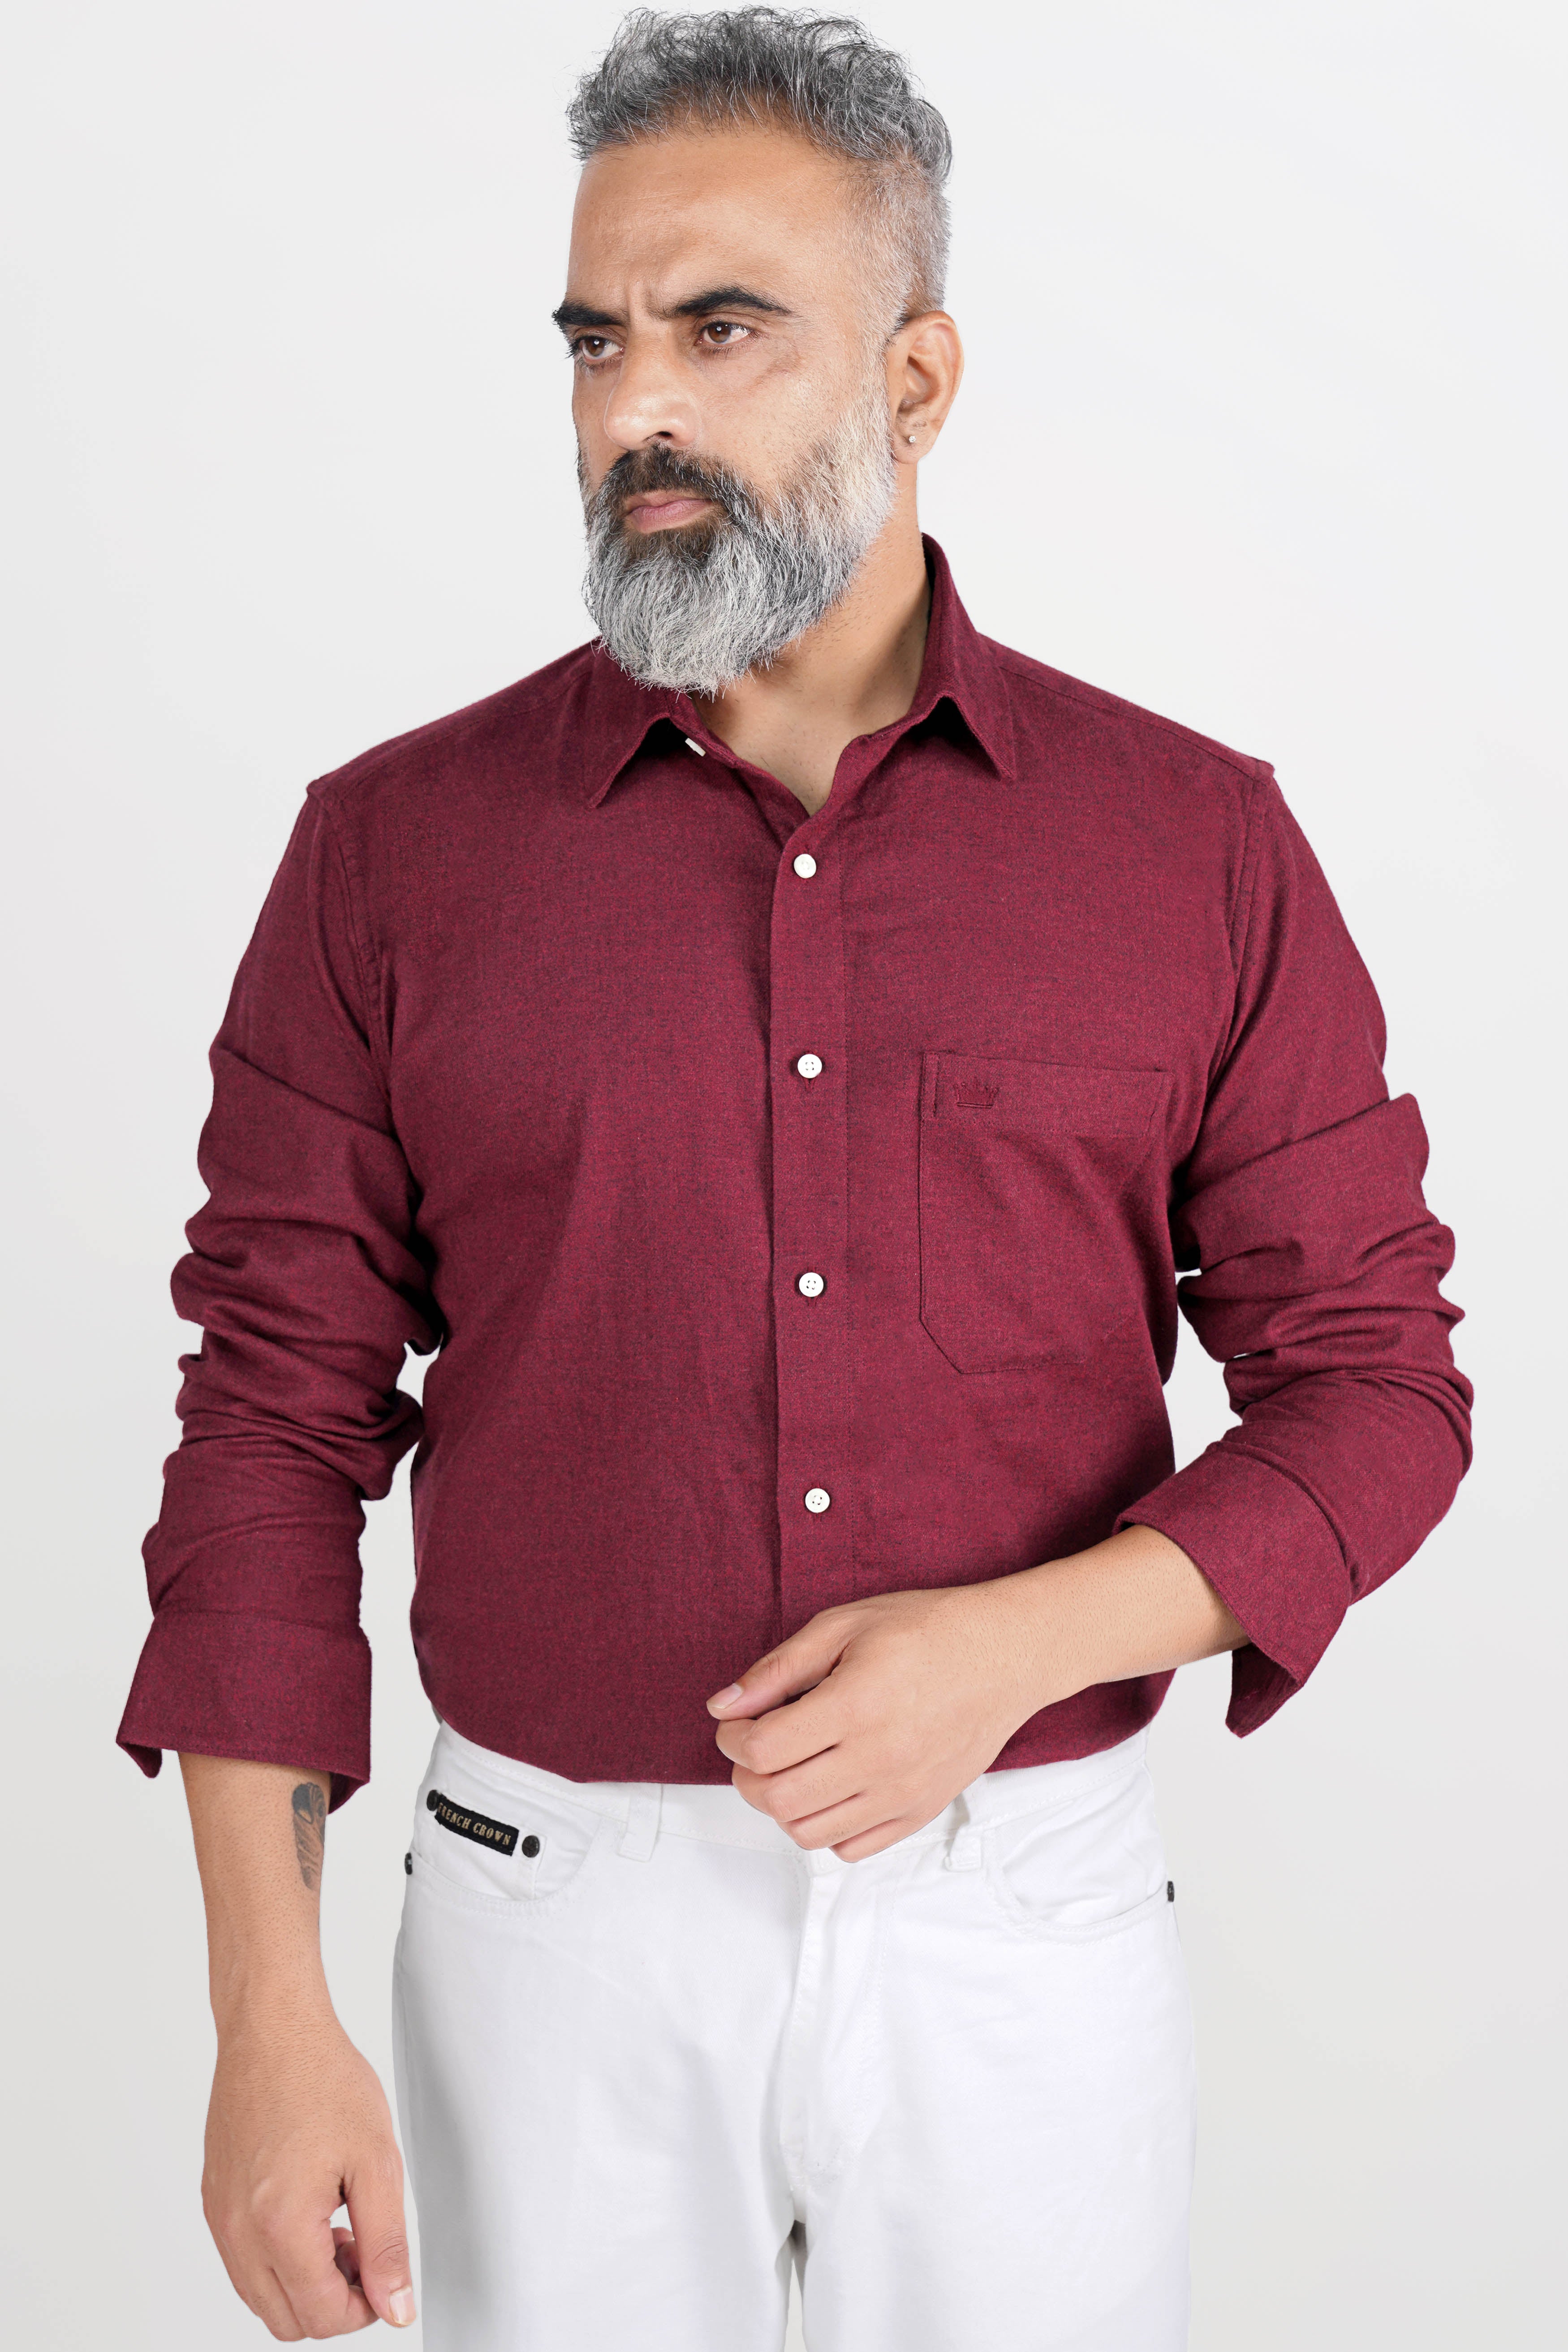 Maroon shirt combination | Erkek moda tarzları, Erkek moda, Moda